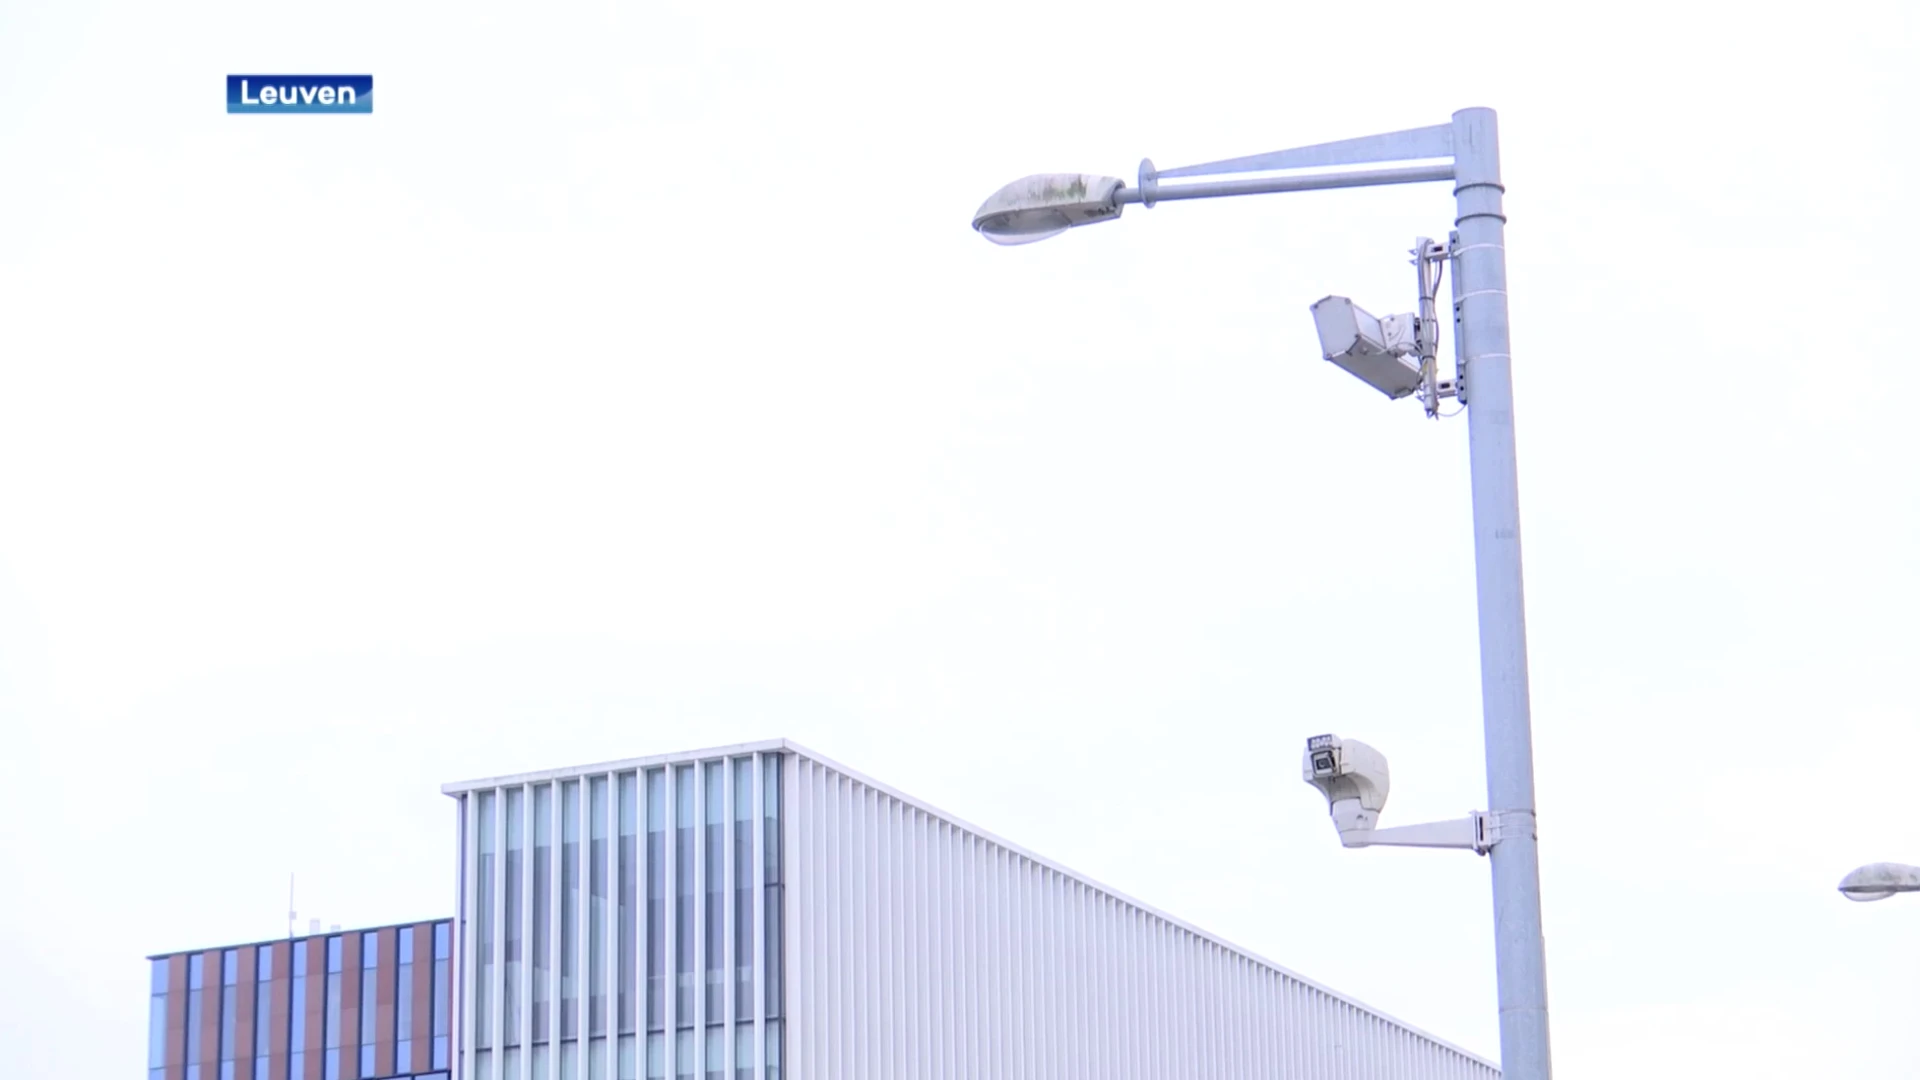 Politie Leuven wil extra bewakingscamera's op 4 plaatsen in Leuven: "Niet om zomaar iedereen in het oog te houden"